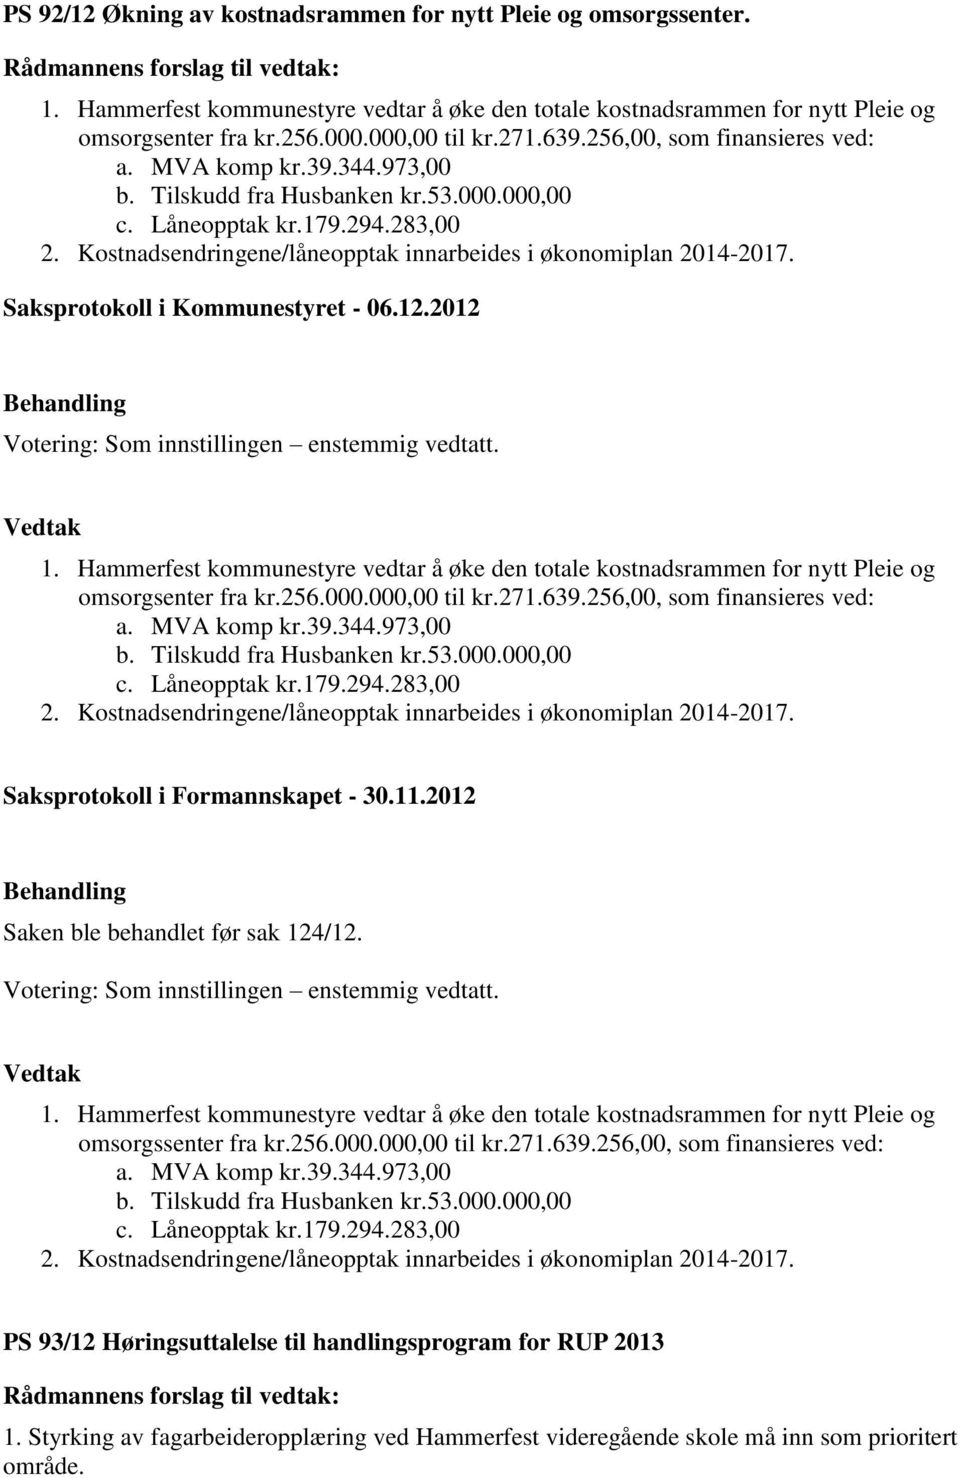 Kostnadsendringene/låneopptak innarbeides i økonomiplan 2014-2017. 1. Hammerfest kommunestyre vedtar å øke den totale kostnadsrammen for nytt Pleie og omsorgsenter fra kr.256.000.000,00 til kr.271.